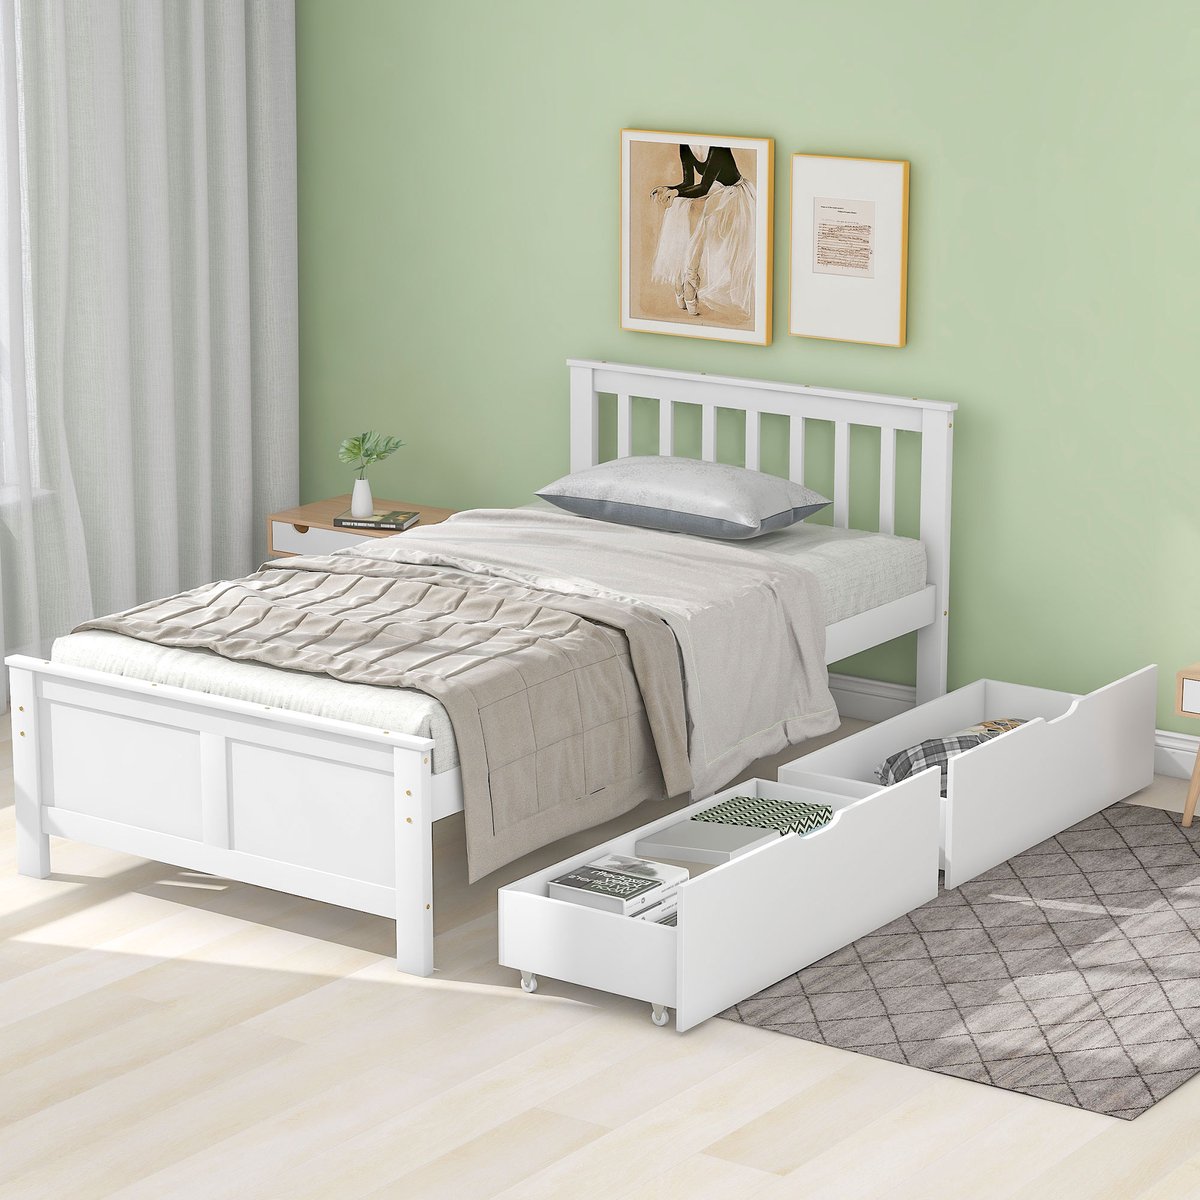 Houten eenpersoonsbed- jeugdbed volwassenenbed met opbergladen onder het bed- frame van grenenhout-wit (90x200cm)